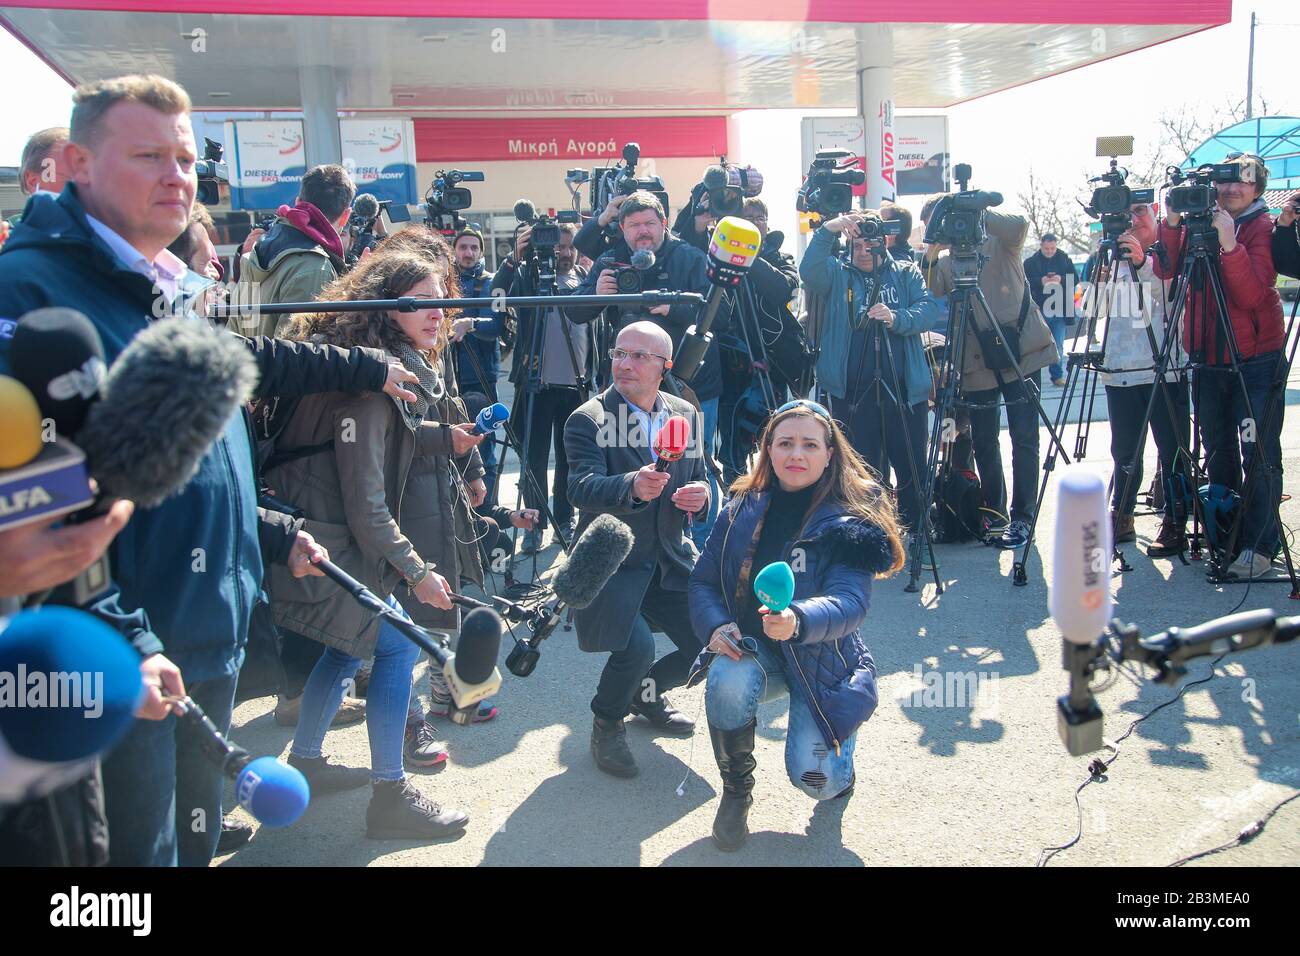 Kastanies, Evros, Grecia - 1 de marzo de 2020: Periodistas, equipos de televisión y fotoperiodismo de todo el mundo se han reunido en el griego-turco Foto de stock